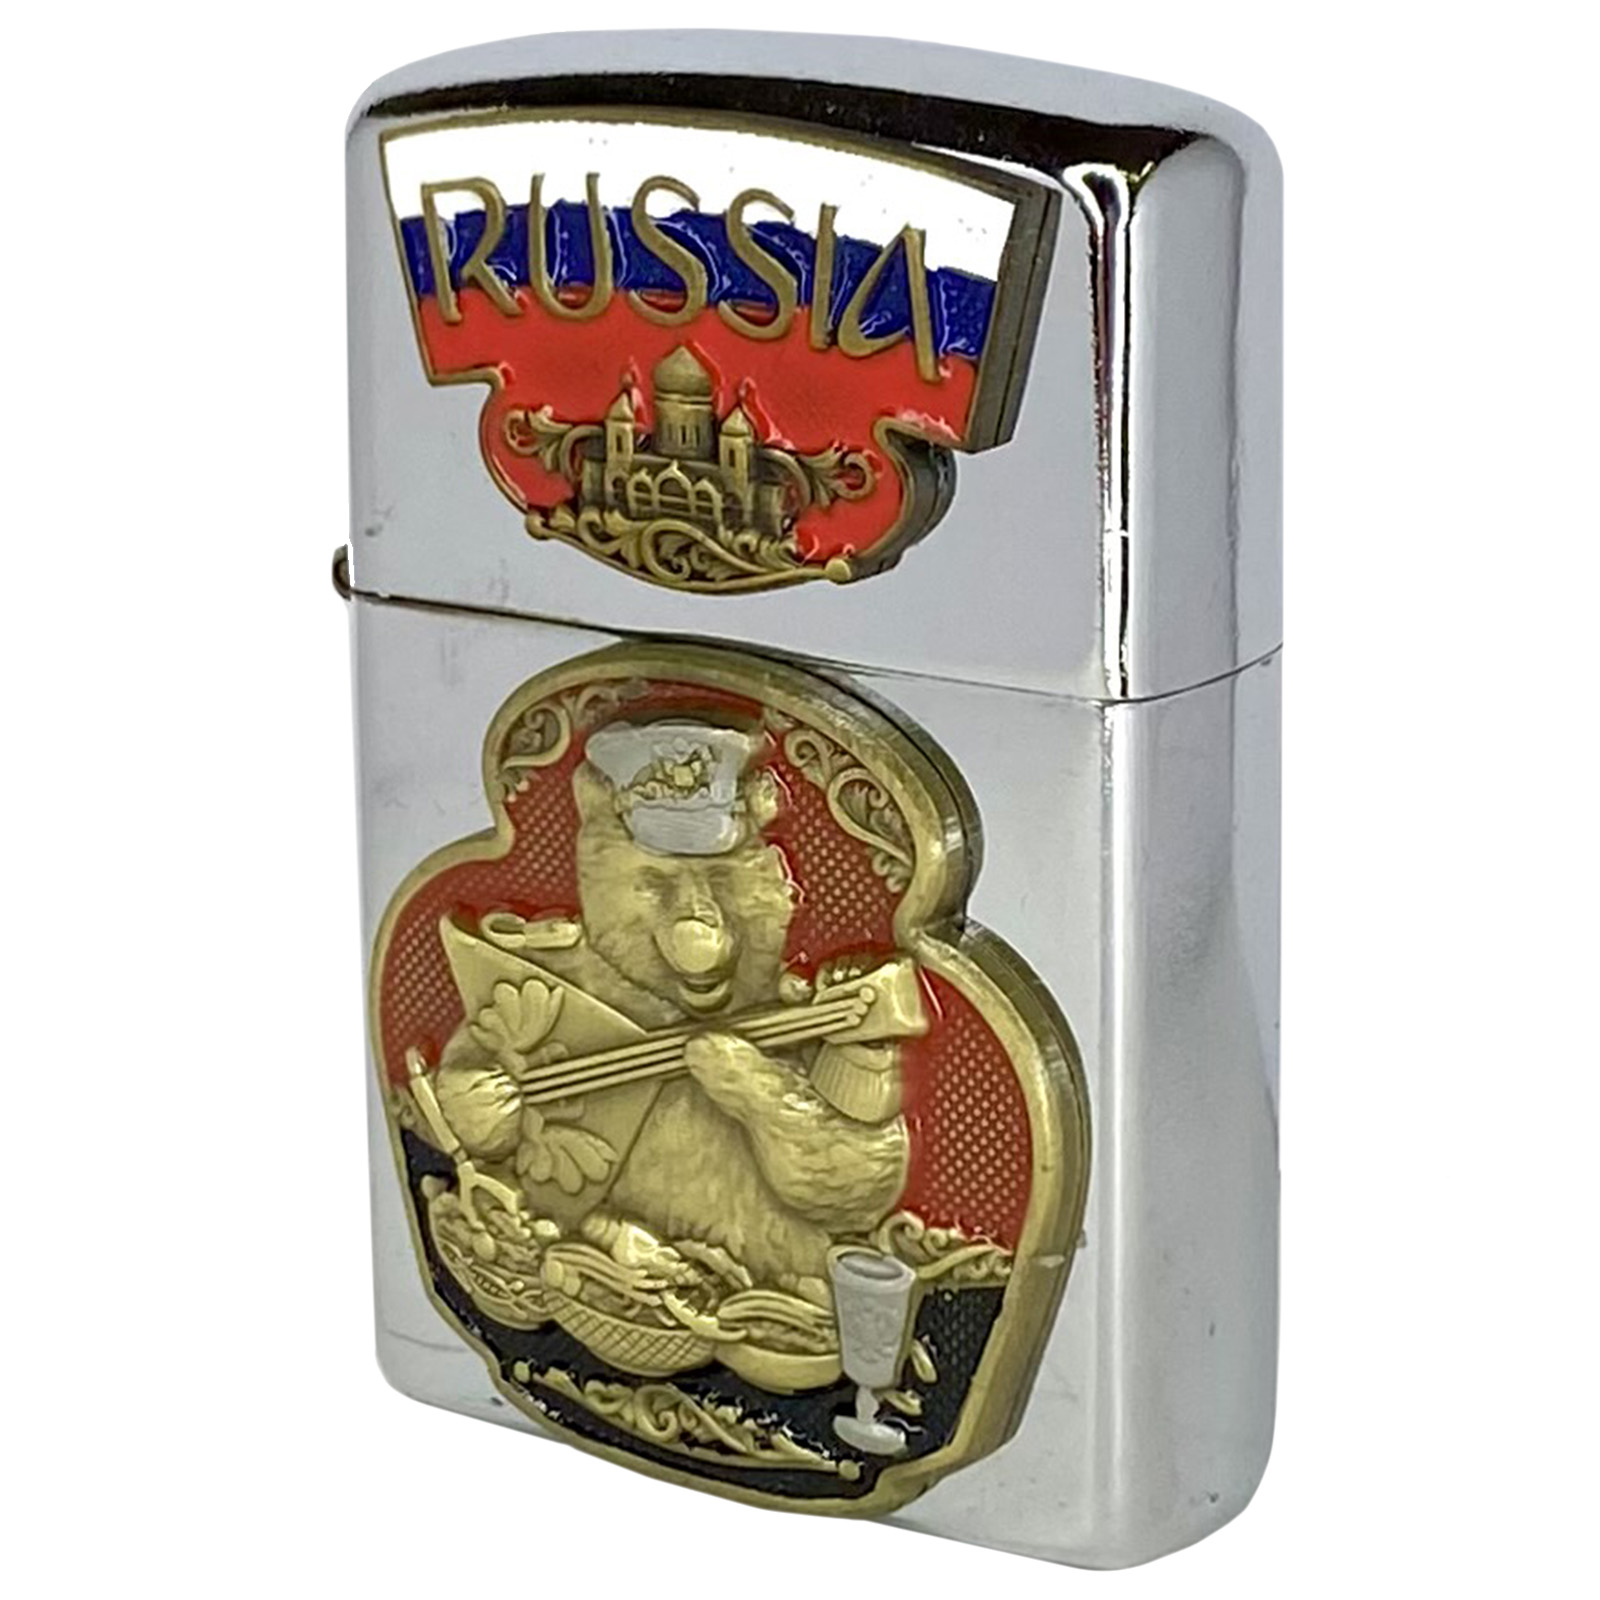 Купить подарочную зажигалку "Русский медведь" по выгодной цене